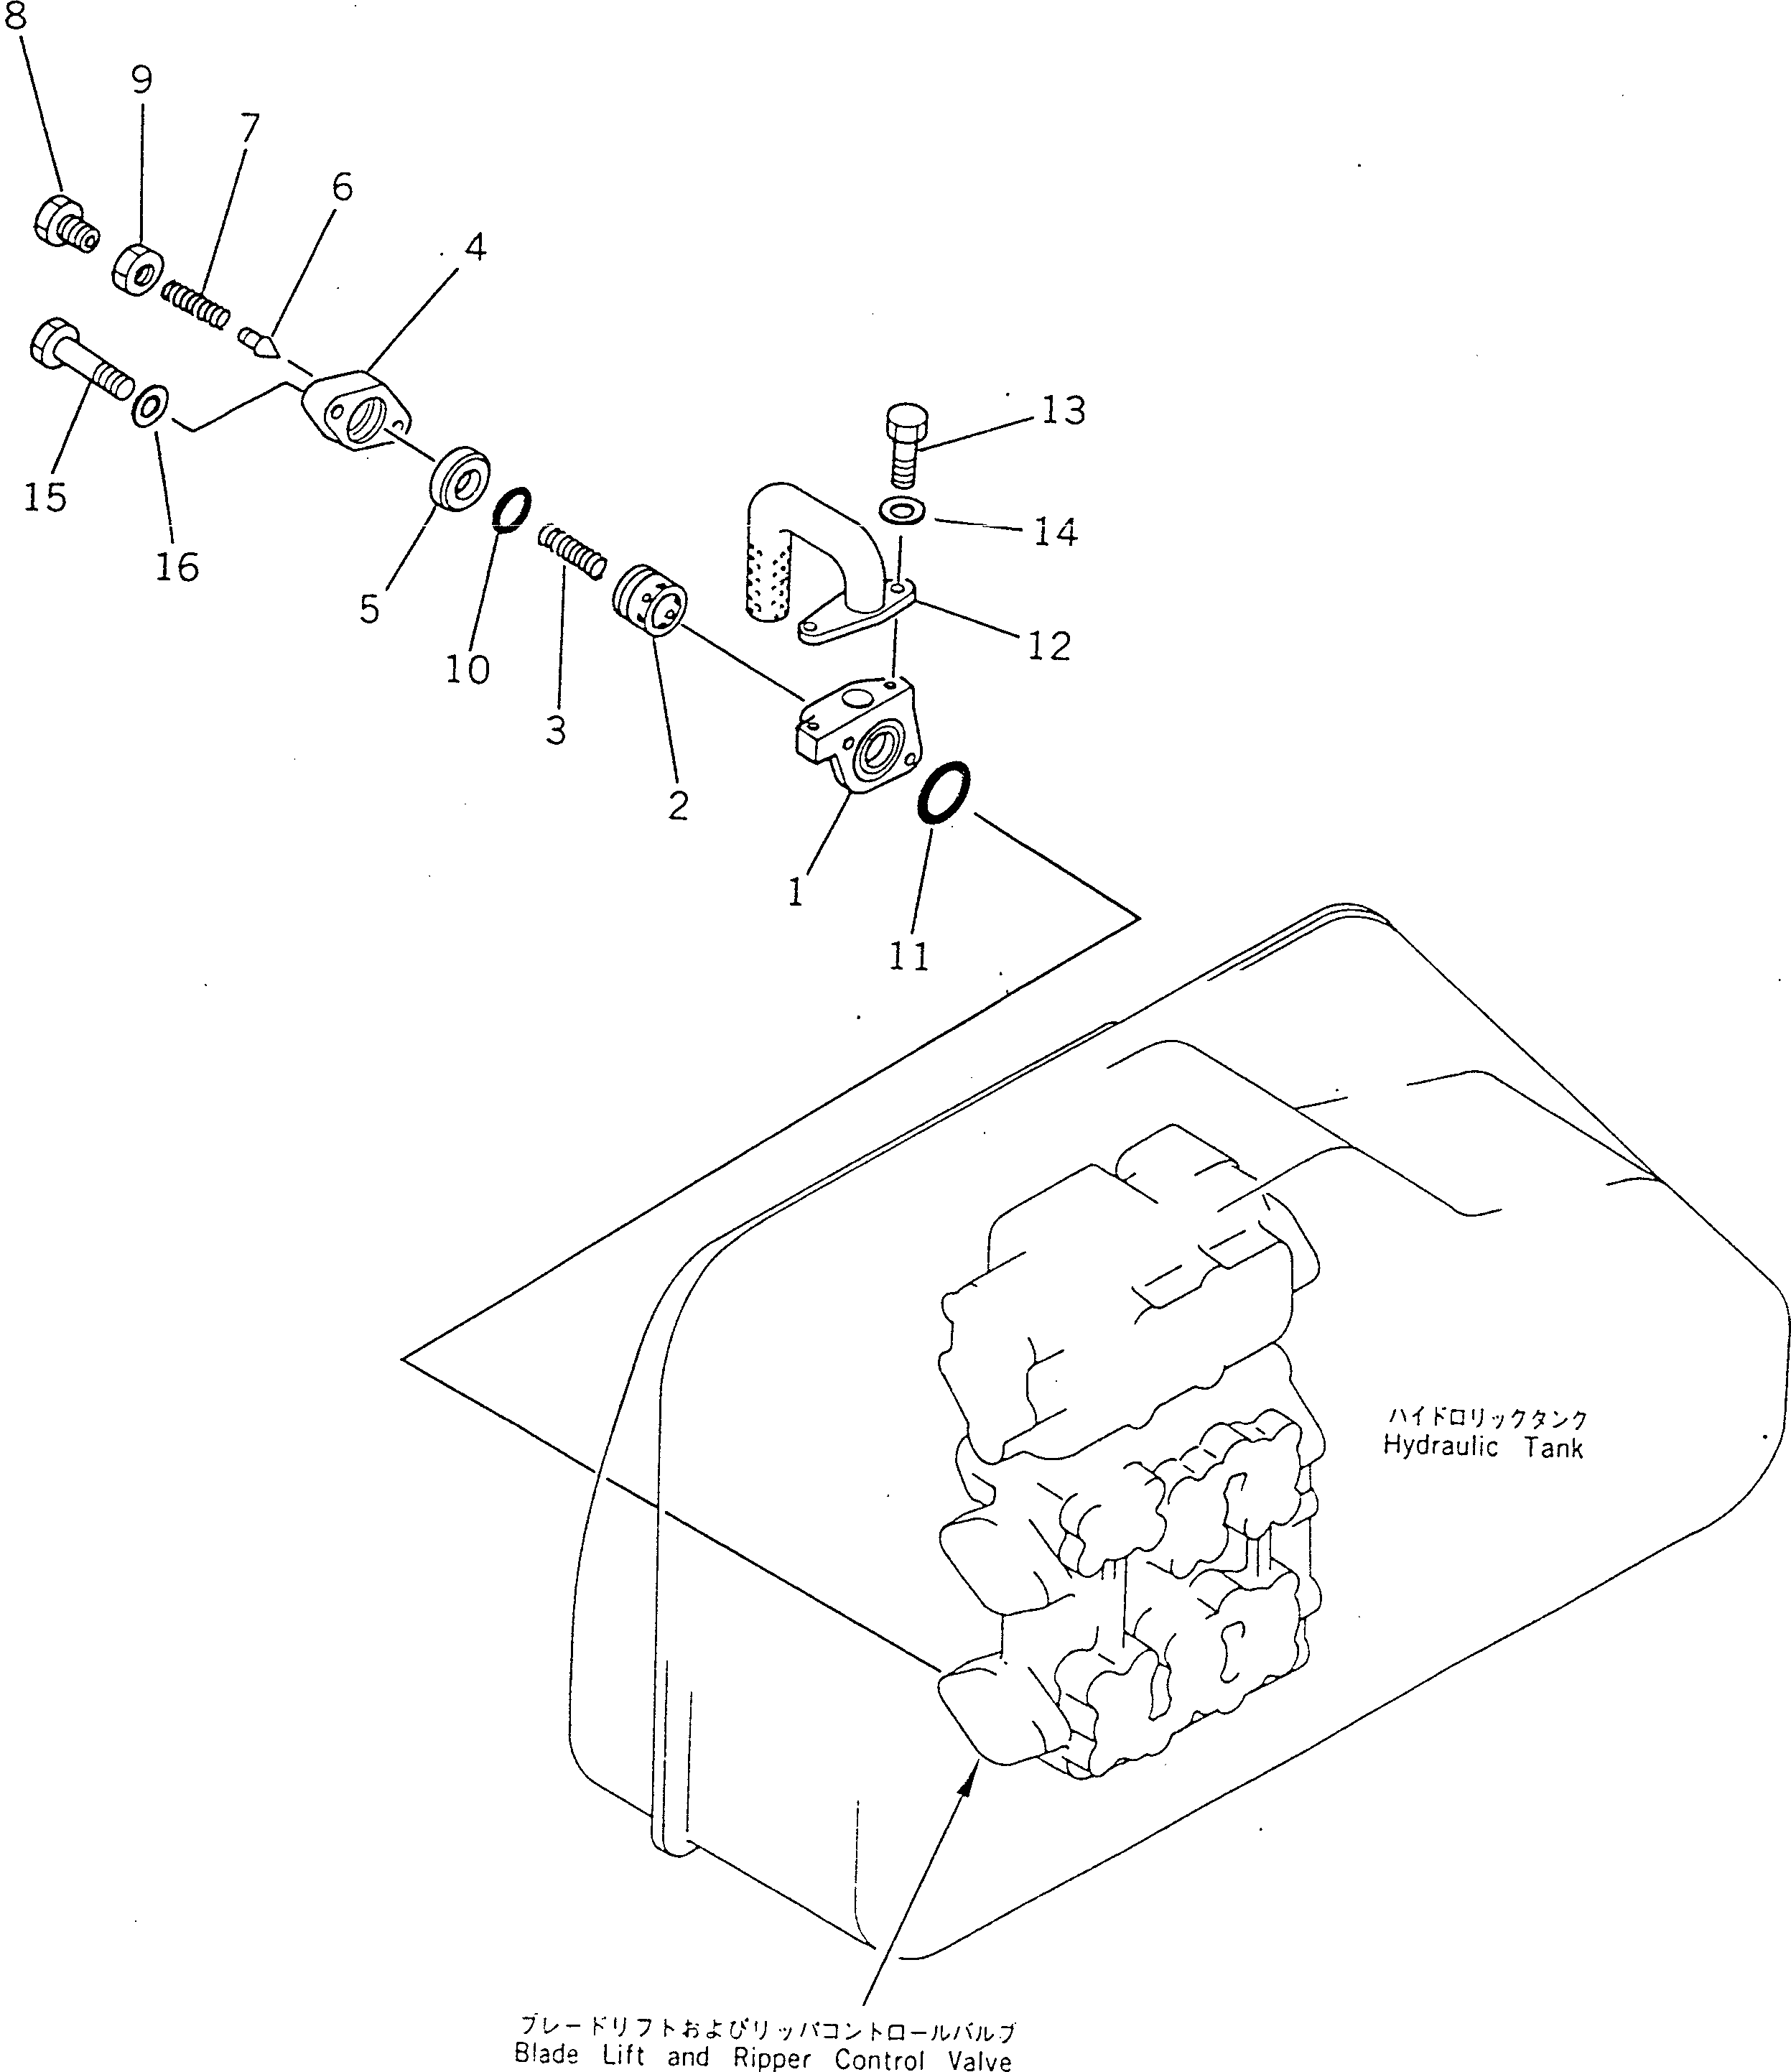 50. MAIN RELIEF VALVE [6013] - Komatsu part D355A-5 S/N 12622-UP [d355a-5c]